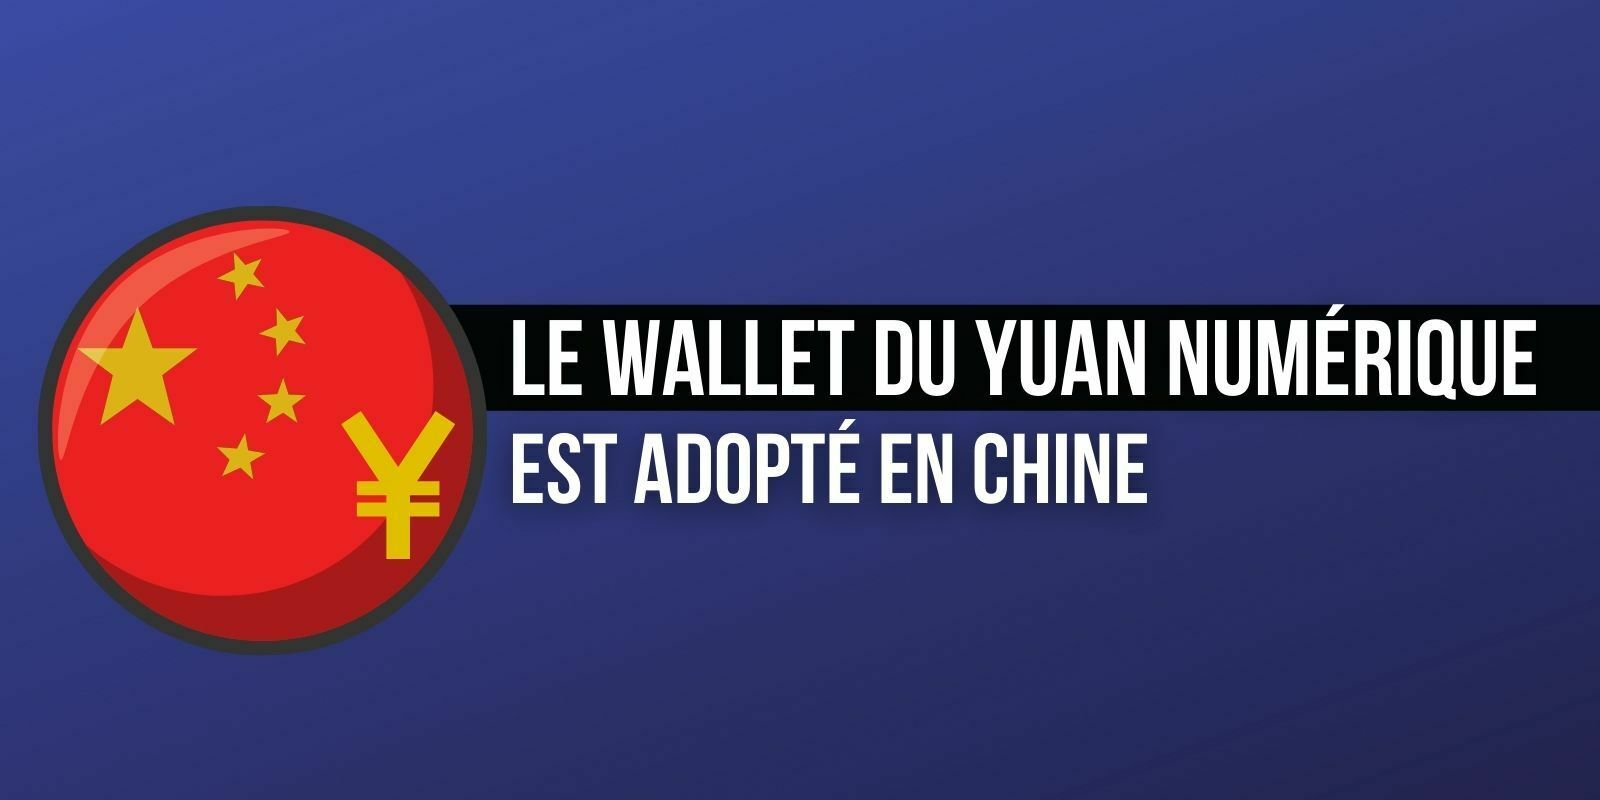 Le wallet du yuan numérique fait partie des applications les plus téléchargées de Chine